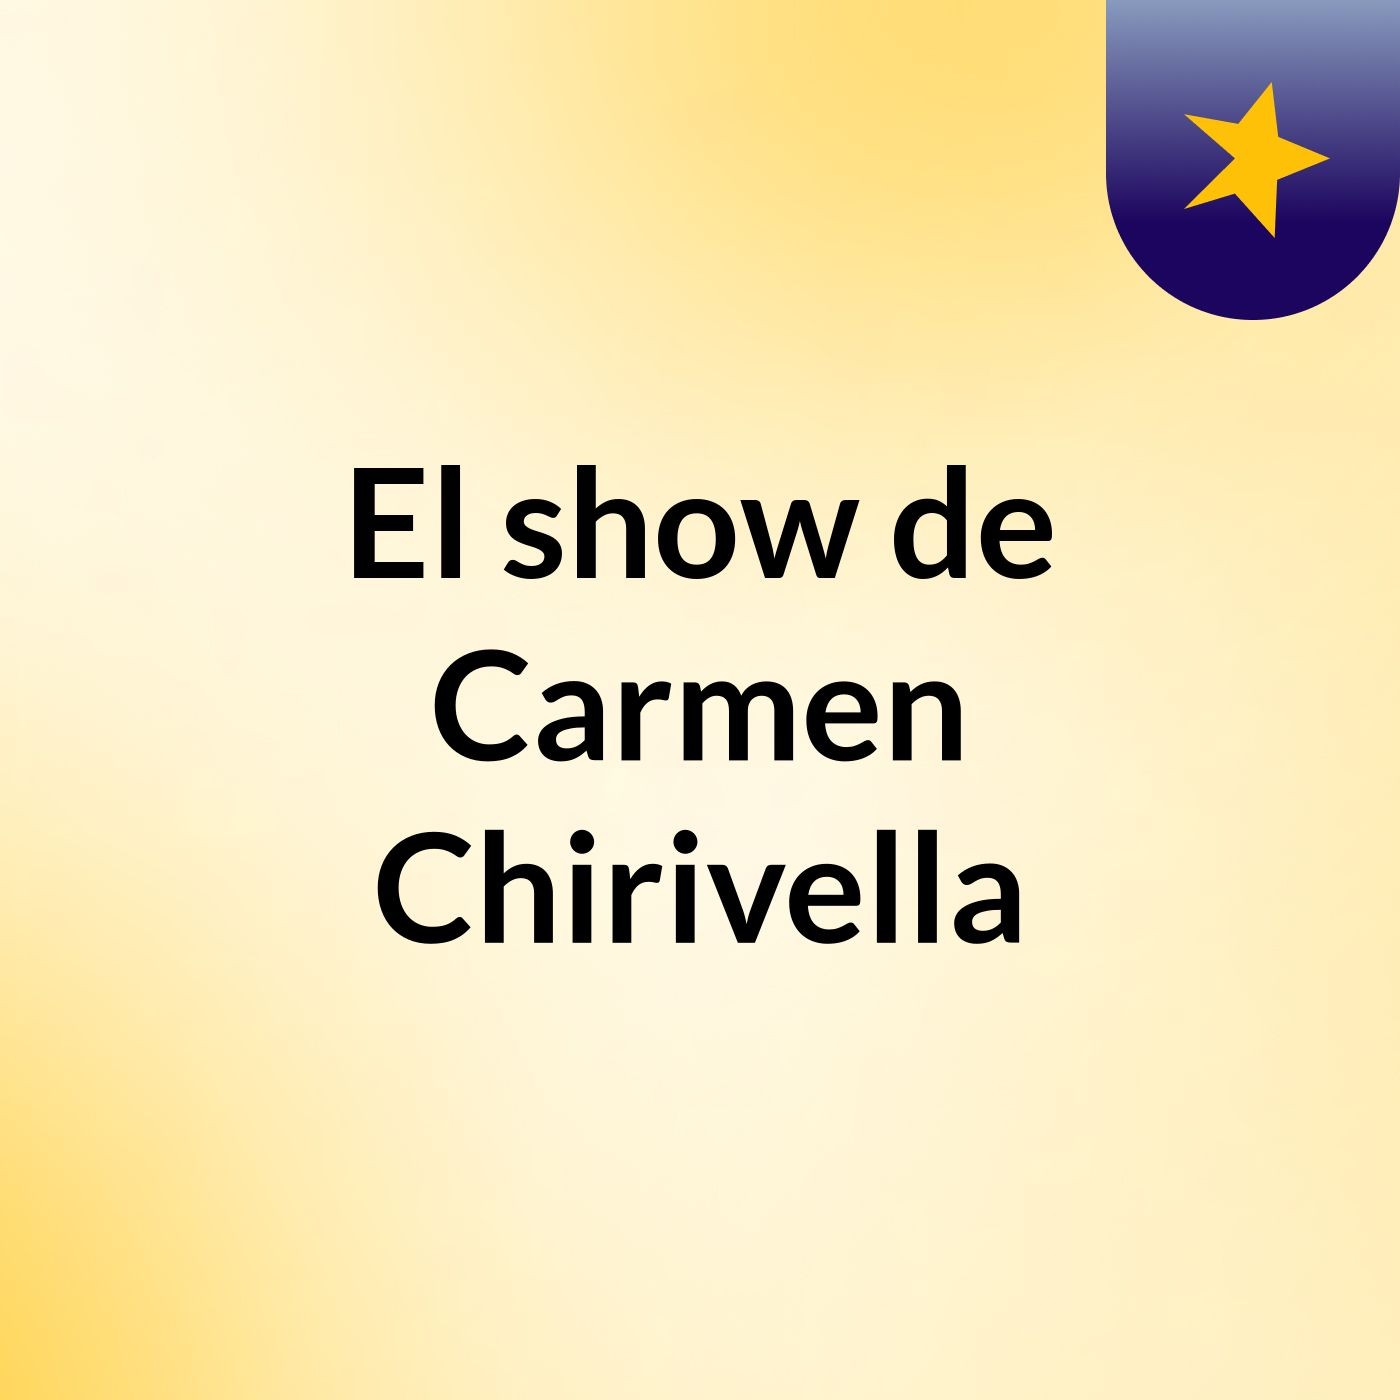 El show de Carmen Chirivella